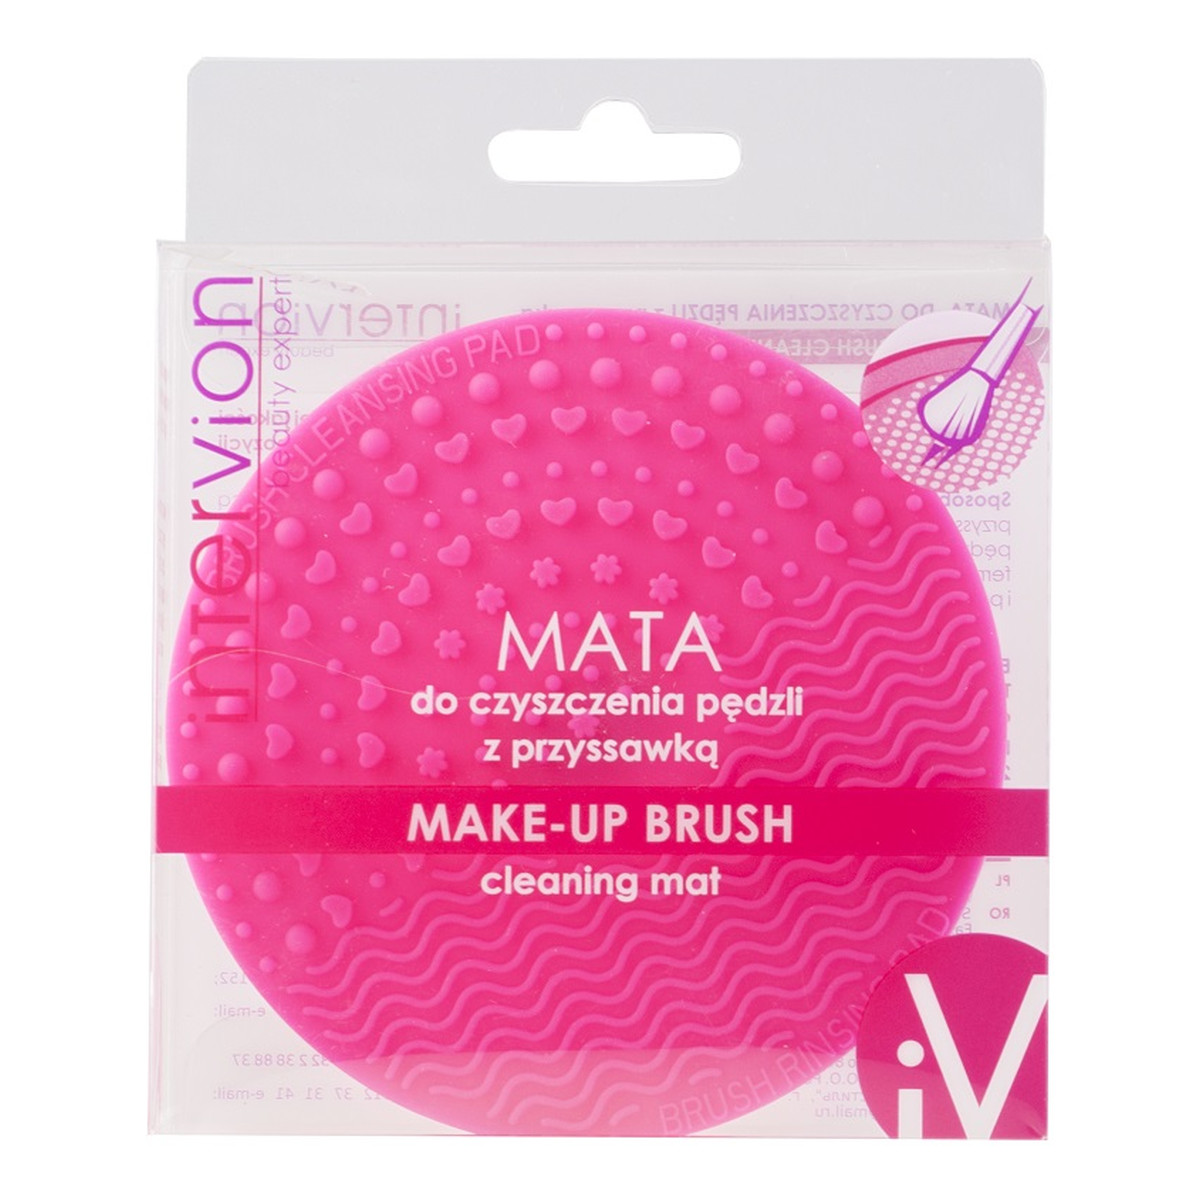 Inter-vion Make-up brush cleaning mat mata do czyszczenia pędzli z przyssawką